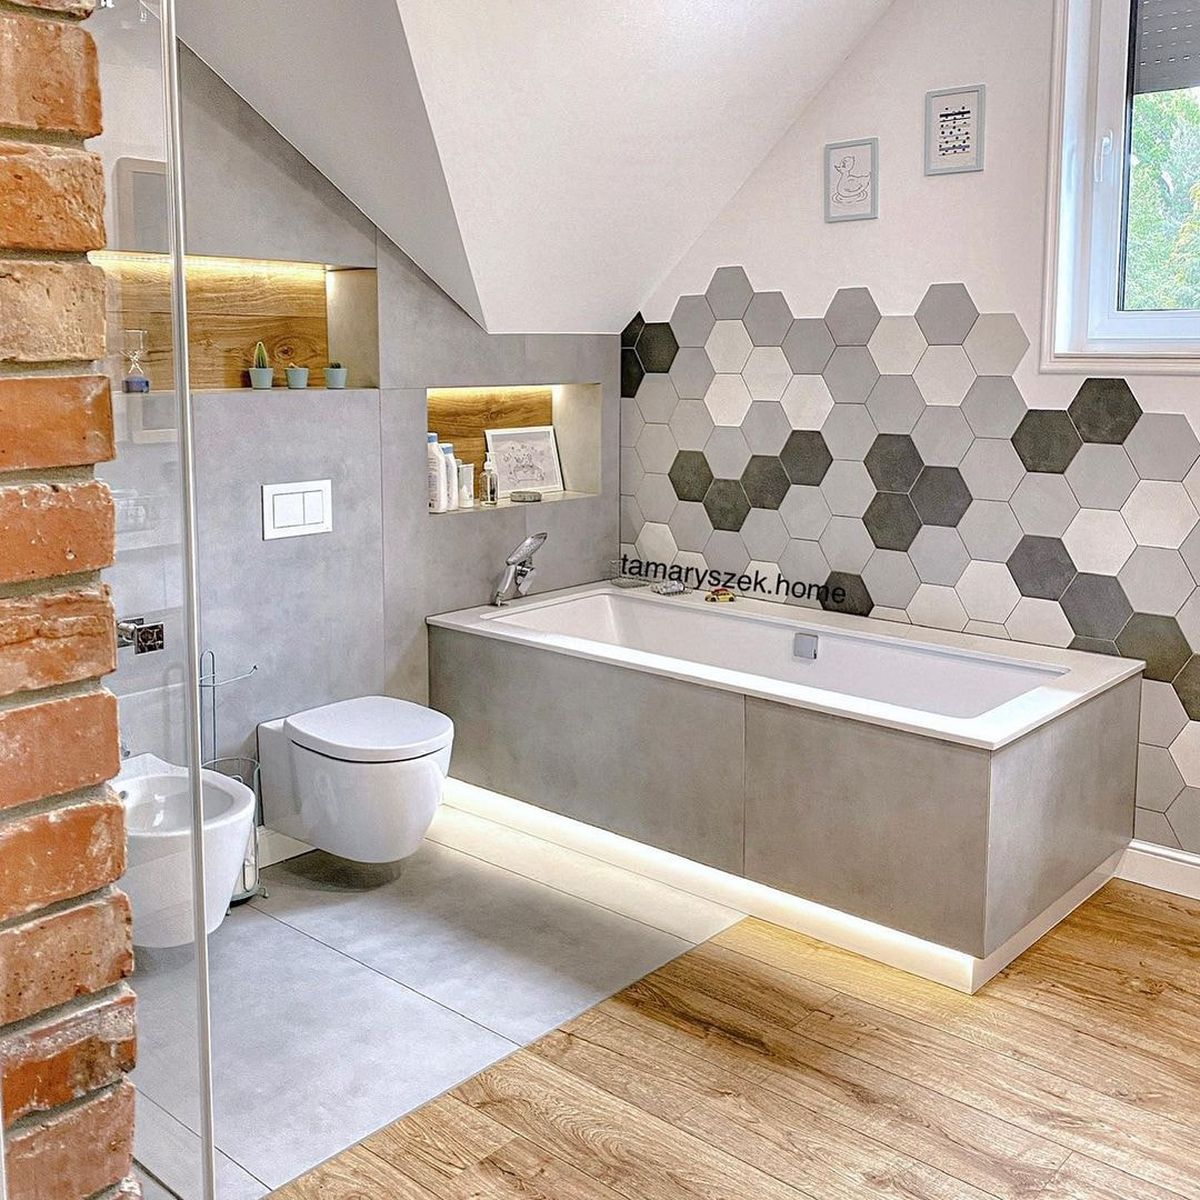 Phòng tắm thiết kế tinh tế tiện nghi với nội thất thông minh kết hợp với việc bố trí nội thất hài hòa ấn tượng